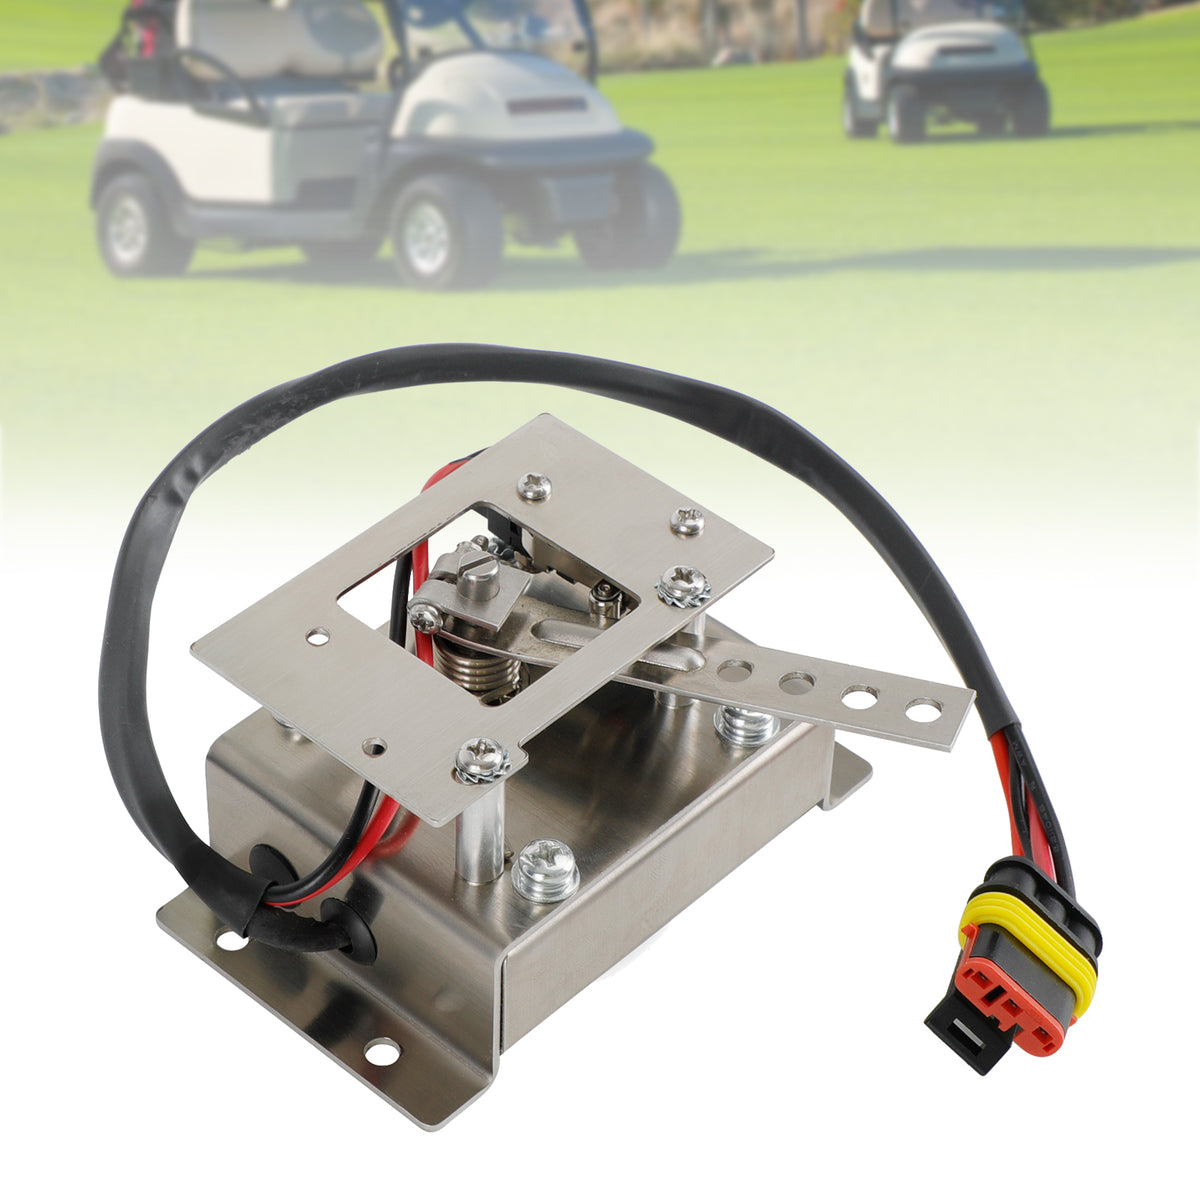 Carrello da golf elettrico 36V Curtis Style Pot Box Potenziometro Interruttore PB-6 per EZGO generico